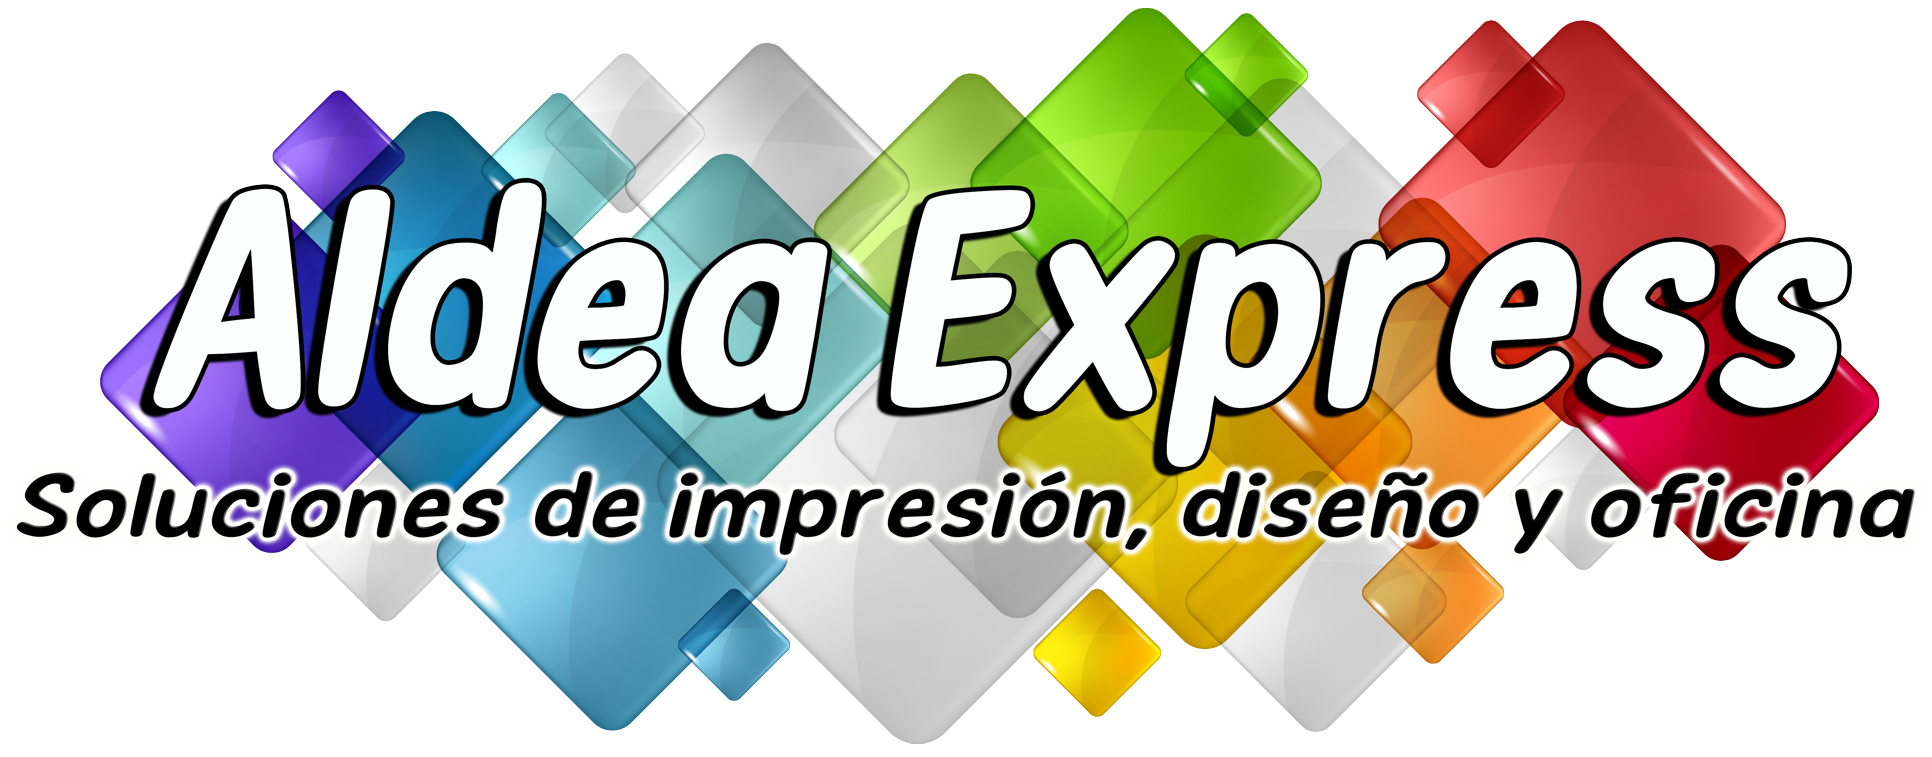 Aldea Express